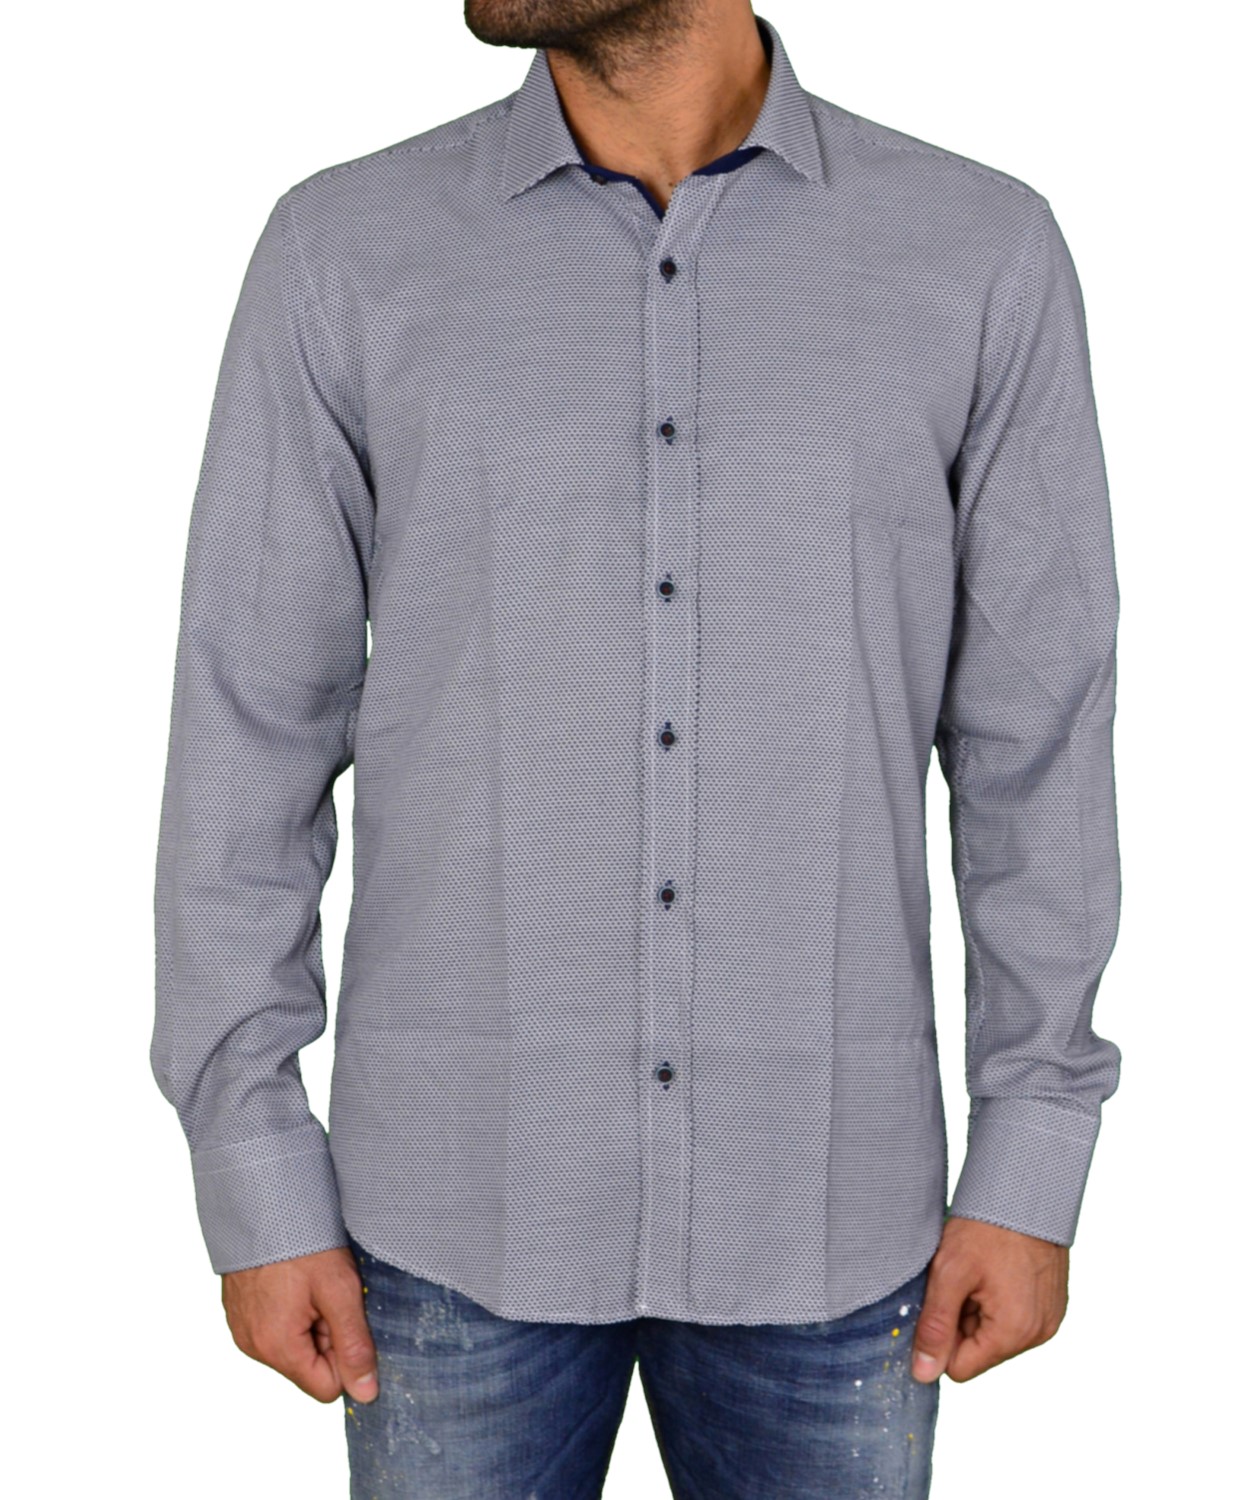 Ανδρικό πουκάμισο μπλε με μικροσχέδια 1183102